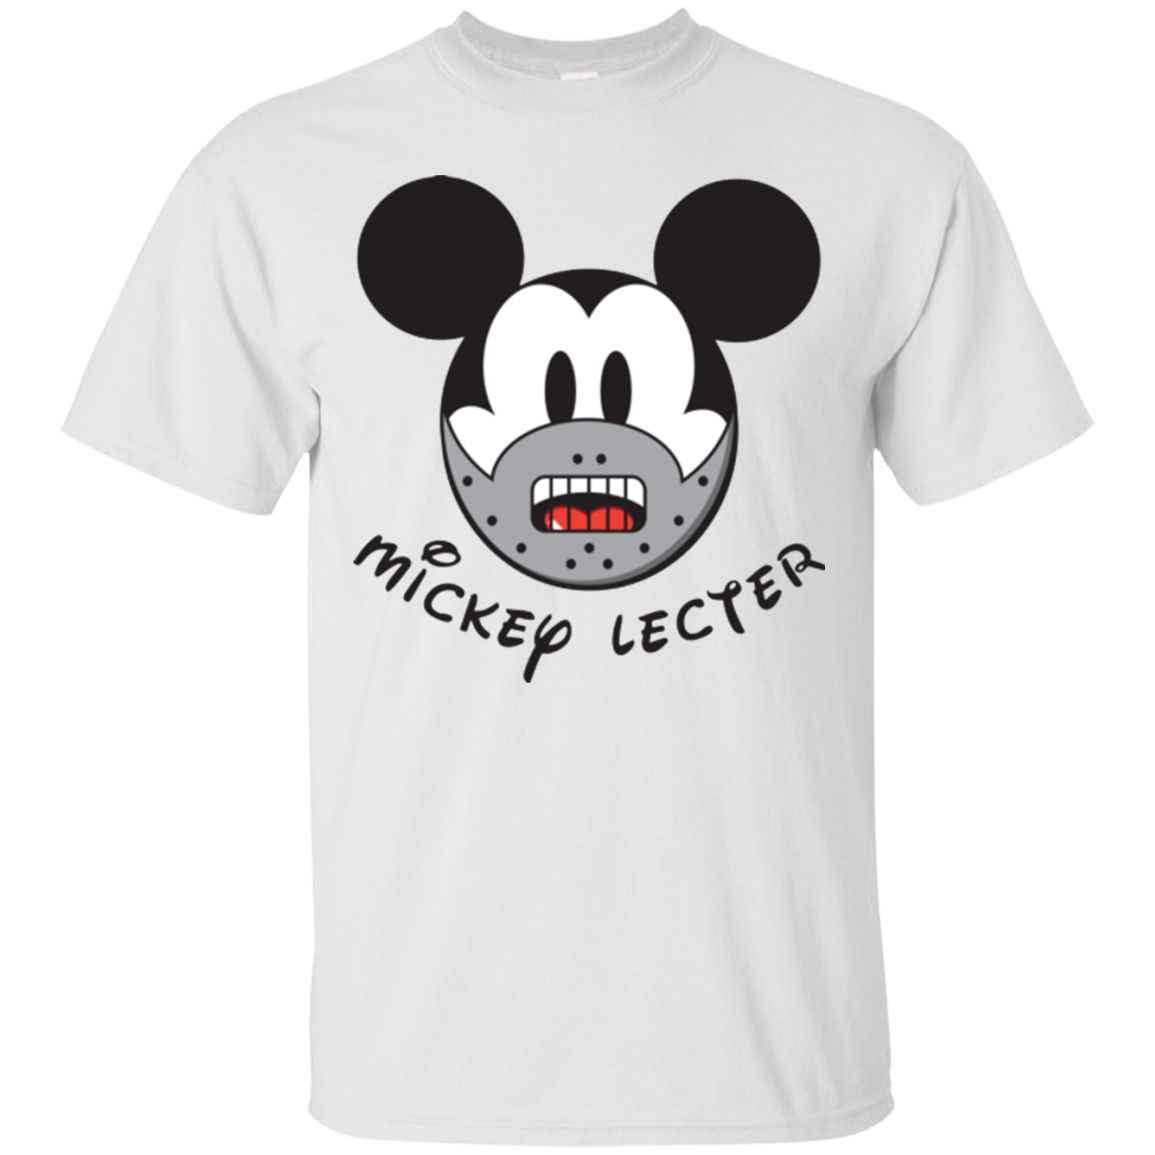 Mickey Lecter T-Shirt